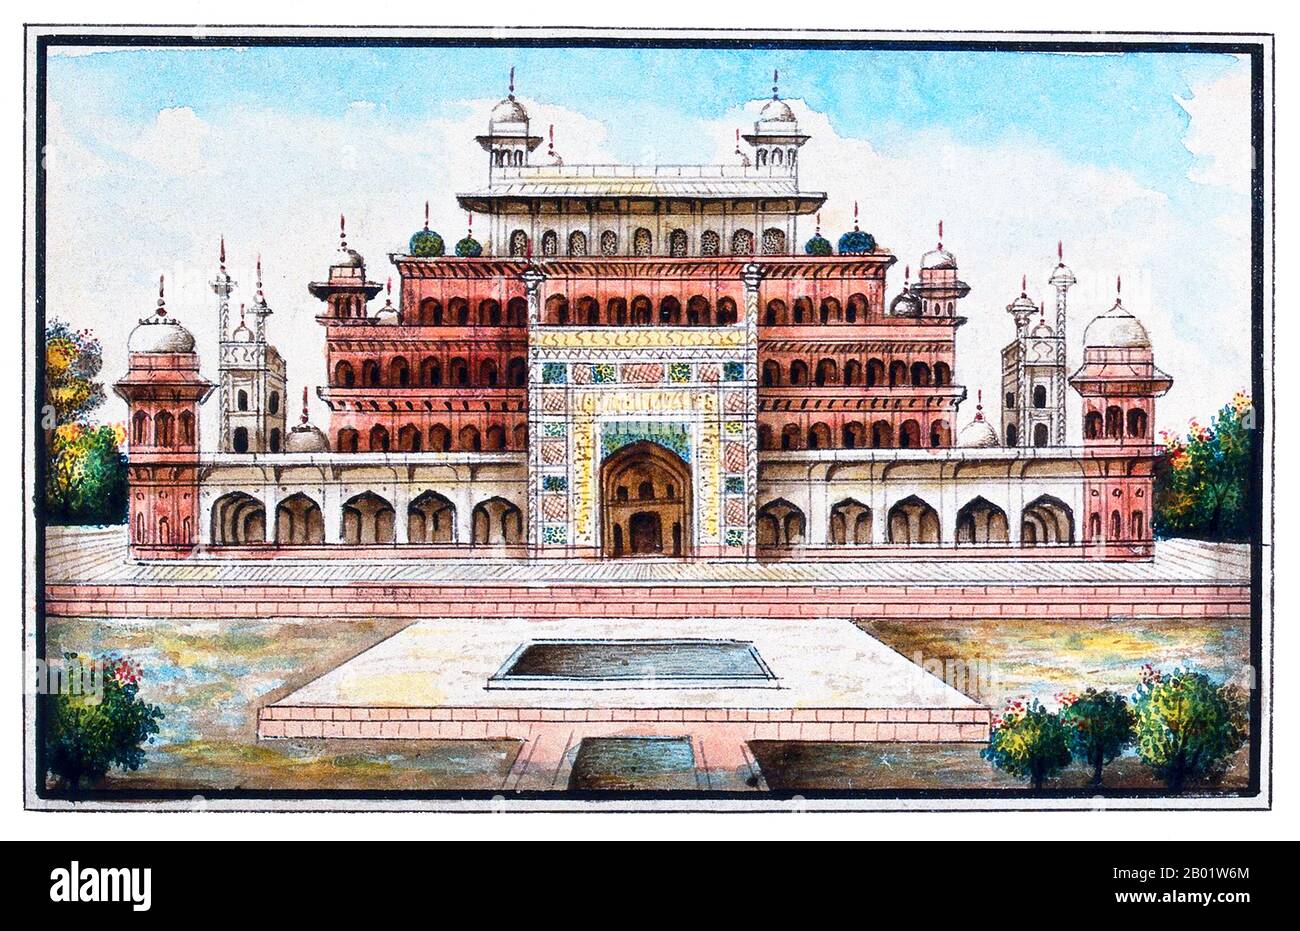 Indien: Das Mausoleum des Mogul-Kaisers Akbar aus dem frühen 17. Jahrhundert. Aquarellmalerei der East India Company, 19. Jahrhundert. Das Grabmal des Dritten Mogulkaisers Akbar (R. 1556–1605) ist ein wichtiges architektonisches Meisterwerk des Moguls, das 1605-1613 erbaut wurde und auf einem 119 Hektar großen Grundstück in Sikandra, einem Vorort von Agra, Uttar Pradesh, Indien, liegt. Kaiser Akbar selbst begann seinen Bau um 1600, nach zentralasiatischer Tradition, mit dem Bau seines Grabes zu Lebzeiten zu beginnen. Akbar selbst plante sein eigenes Grab und wählte einen geeigneten Ort aus. Er wurde von seinem Sohn fertiggestellt. Stockfoto